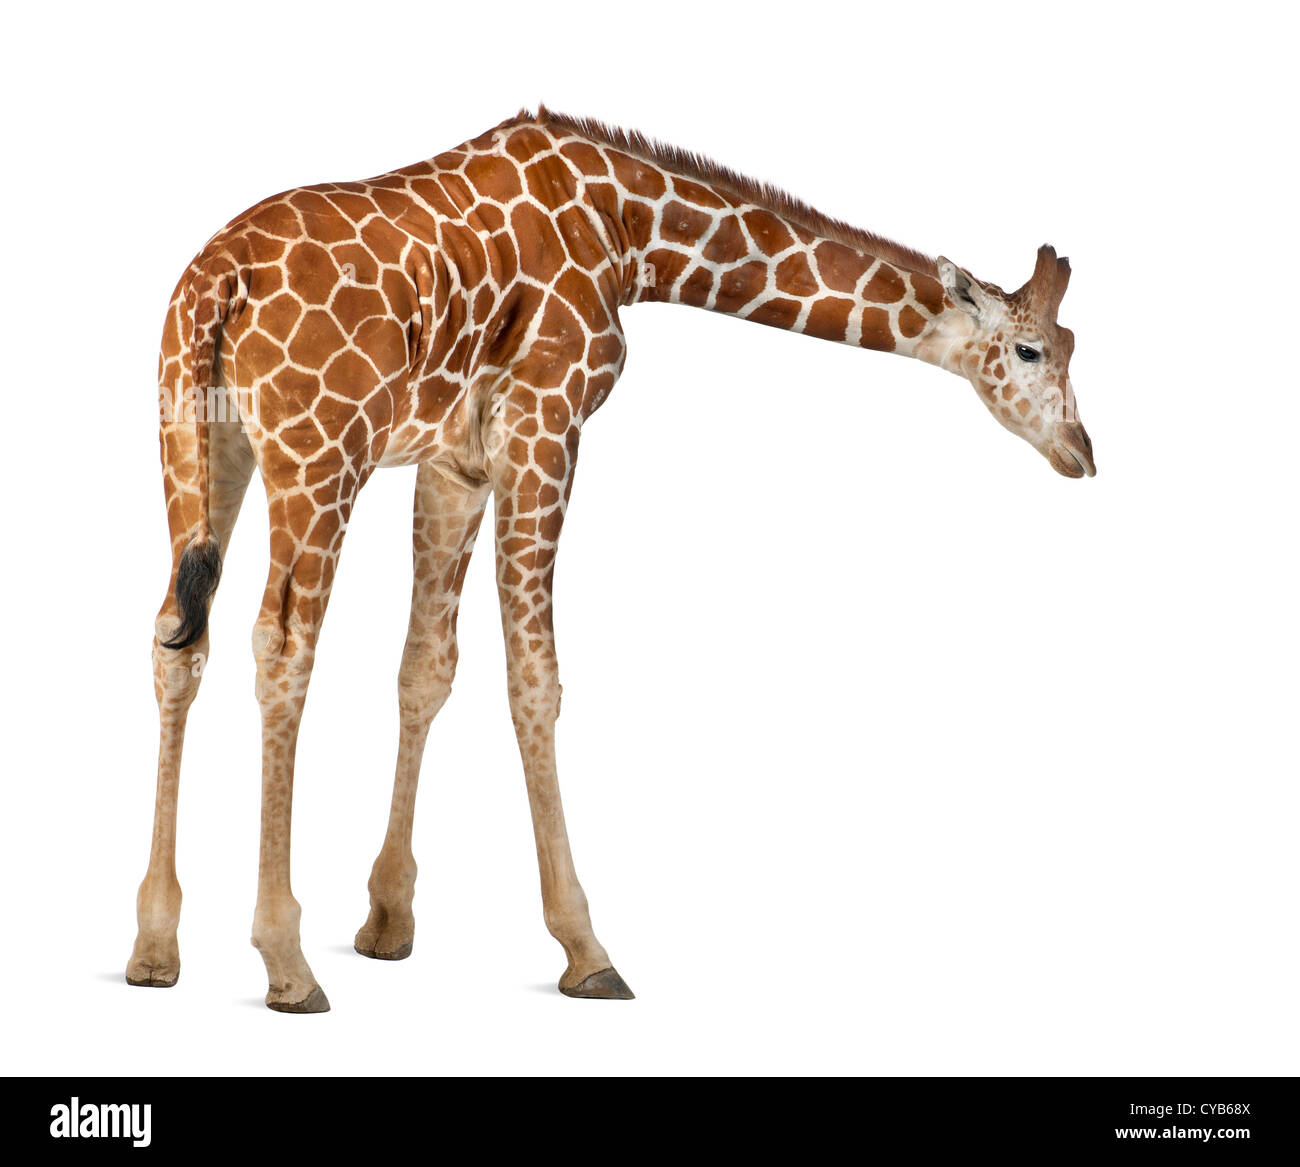 Jirafa somalí, conocida como la Jirafa reticulada, Giraffa camelopardalis reticulata, 2,5 años de edad, contra el fondo blanco. Foto de stock